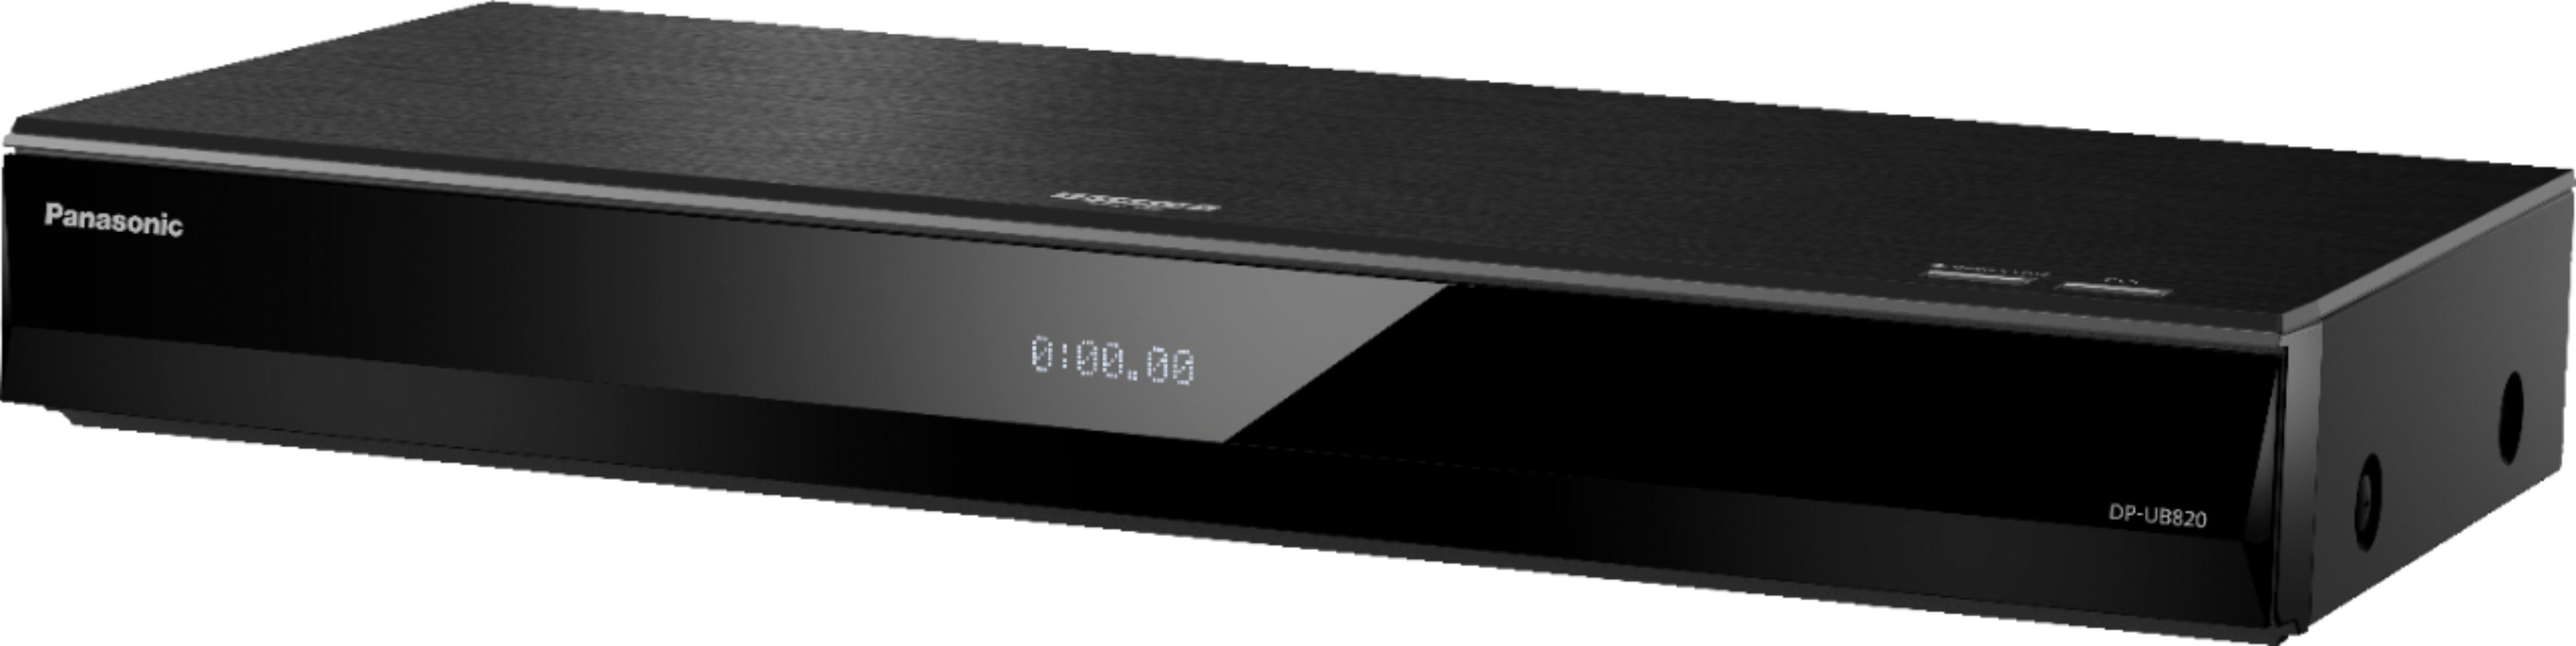 テレビ/映像機器 ブルーレイプレーヤー Panasonic Streaming 4K Ultra HD Hi-Res Audio with Dolby Vision 7.1 